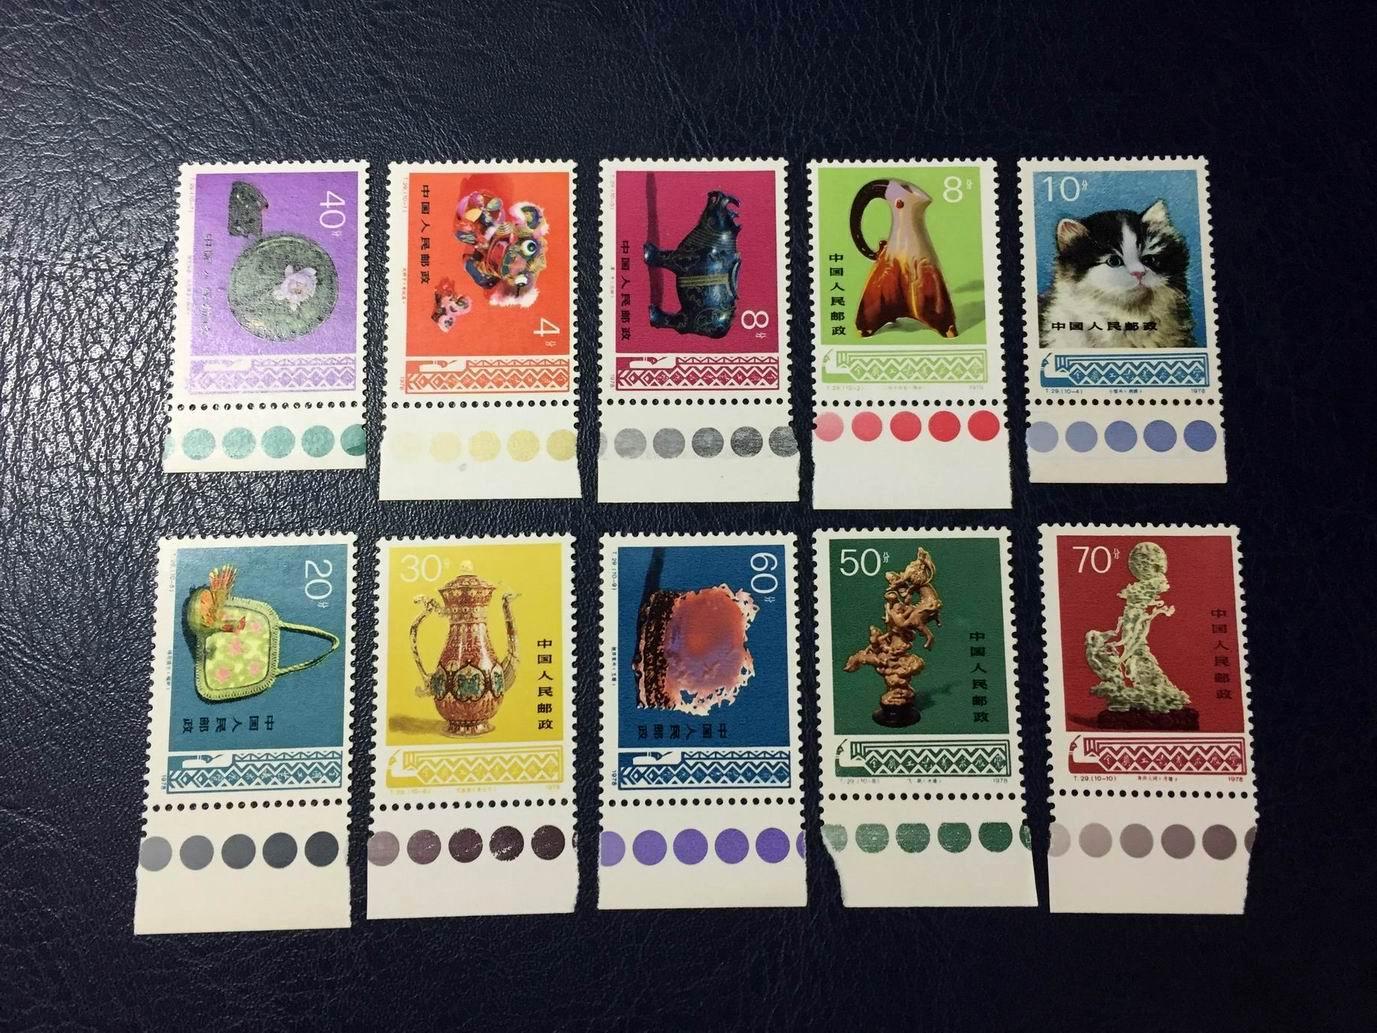 价值连城的大龙邮票，被誉为最贵的中国邮票 - 知乎